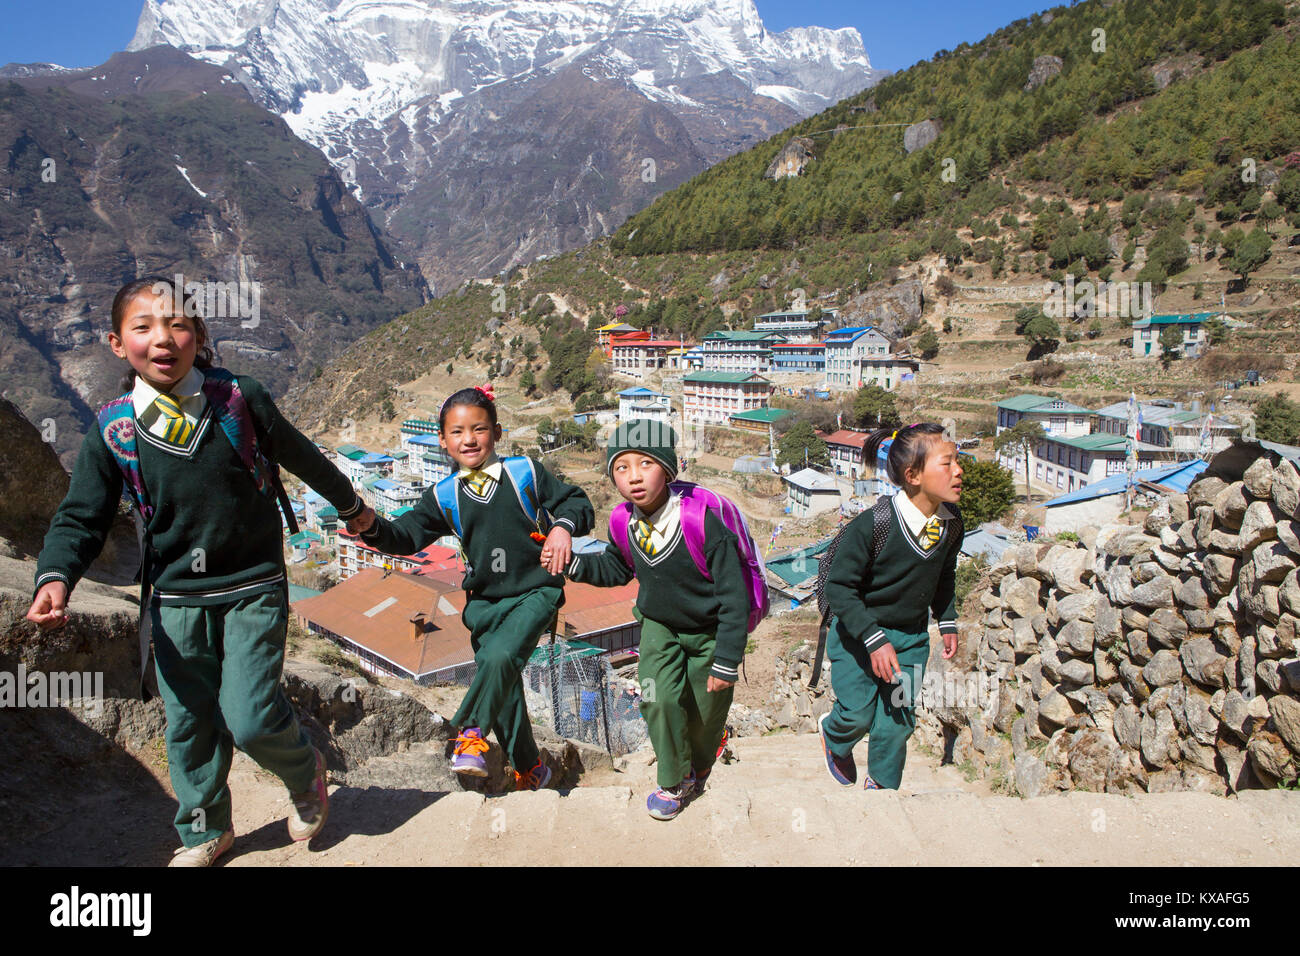 Quatre jeunes enfants vêtus de l'uniforme est la marche en montagne Namche Bazar, un village de montagne dans la vallée du Khumbu au Népal. Banque D'Images